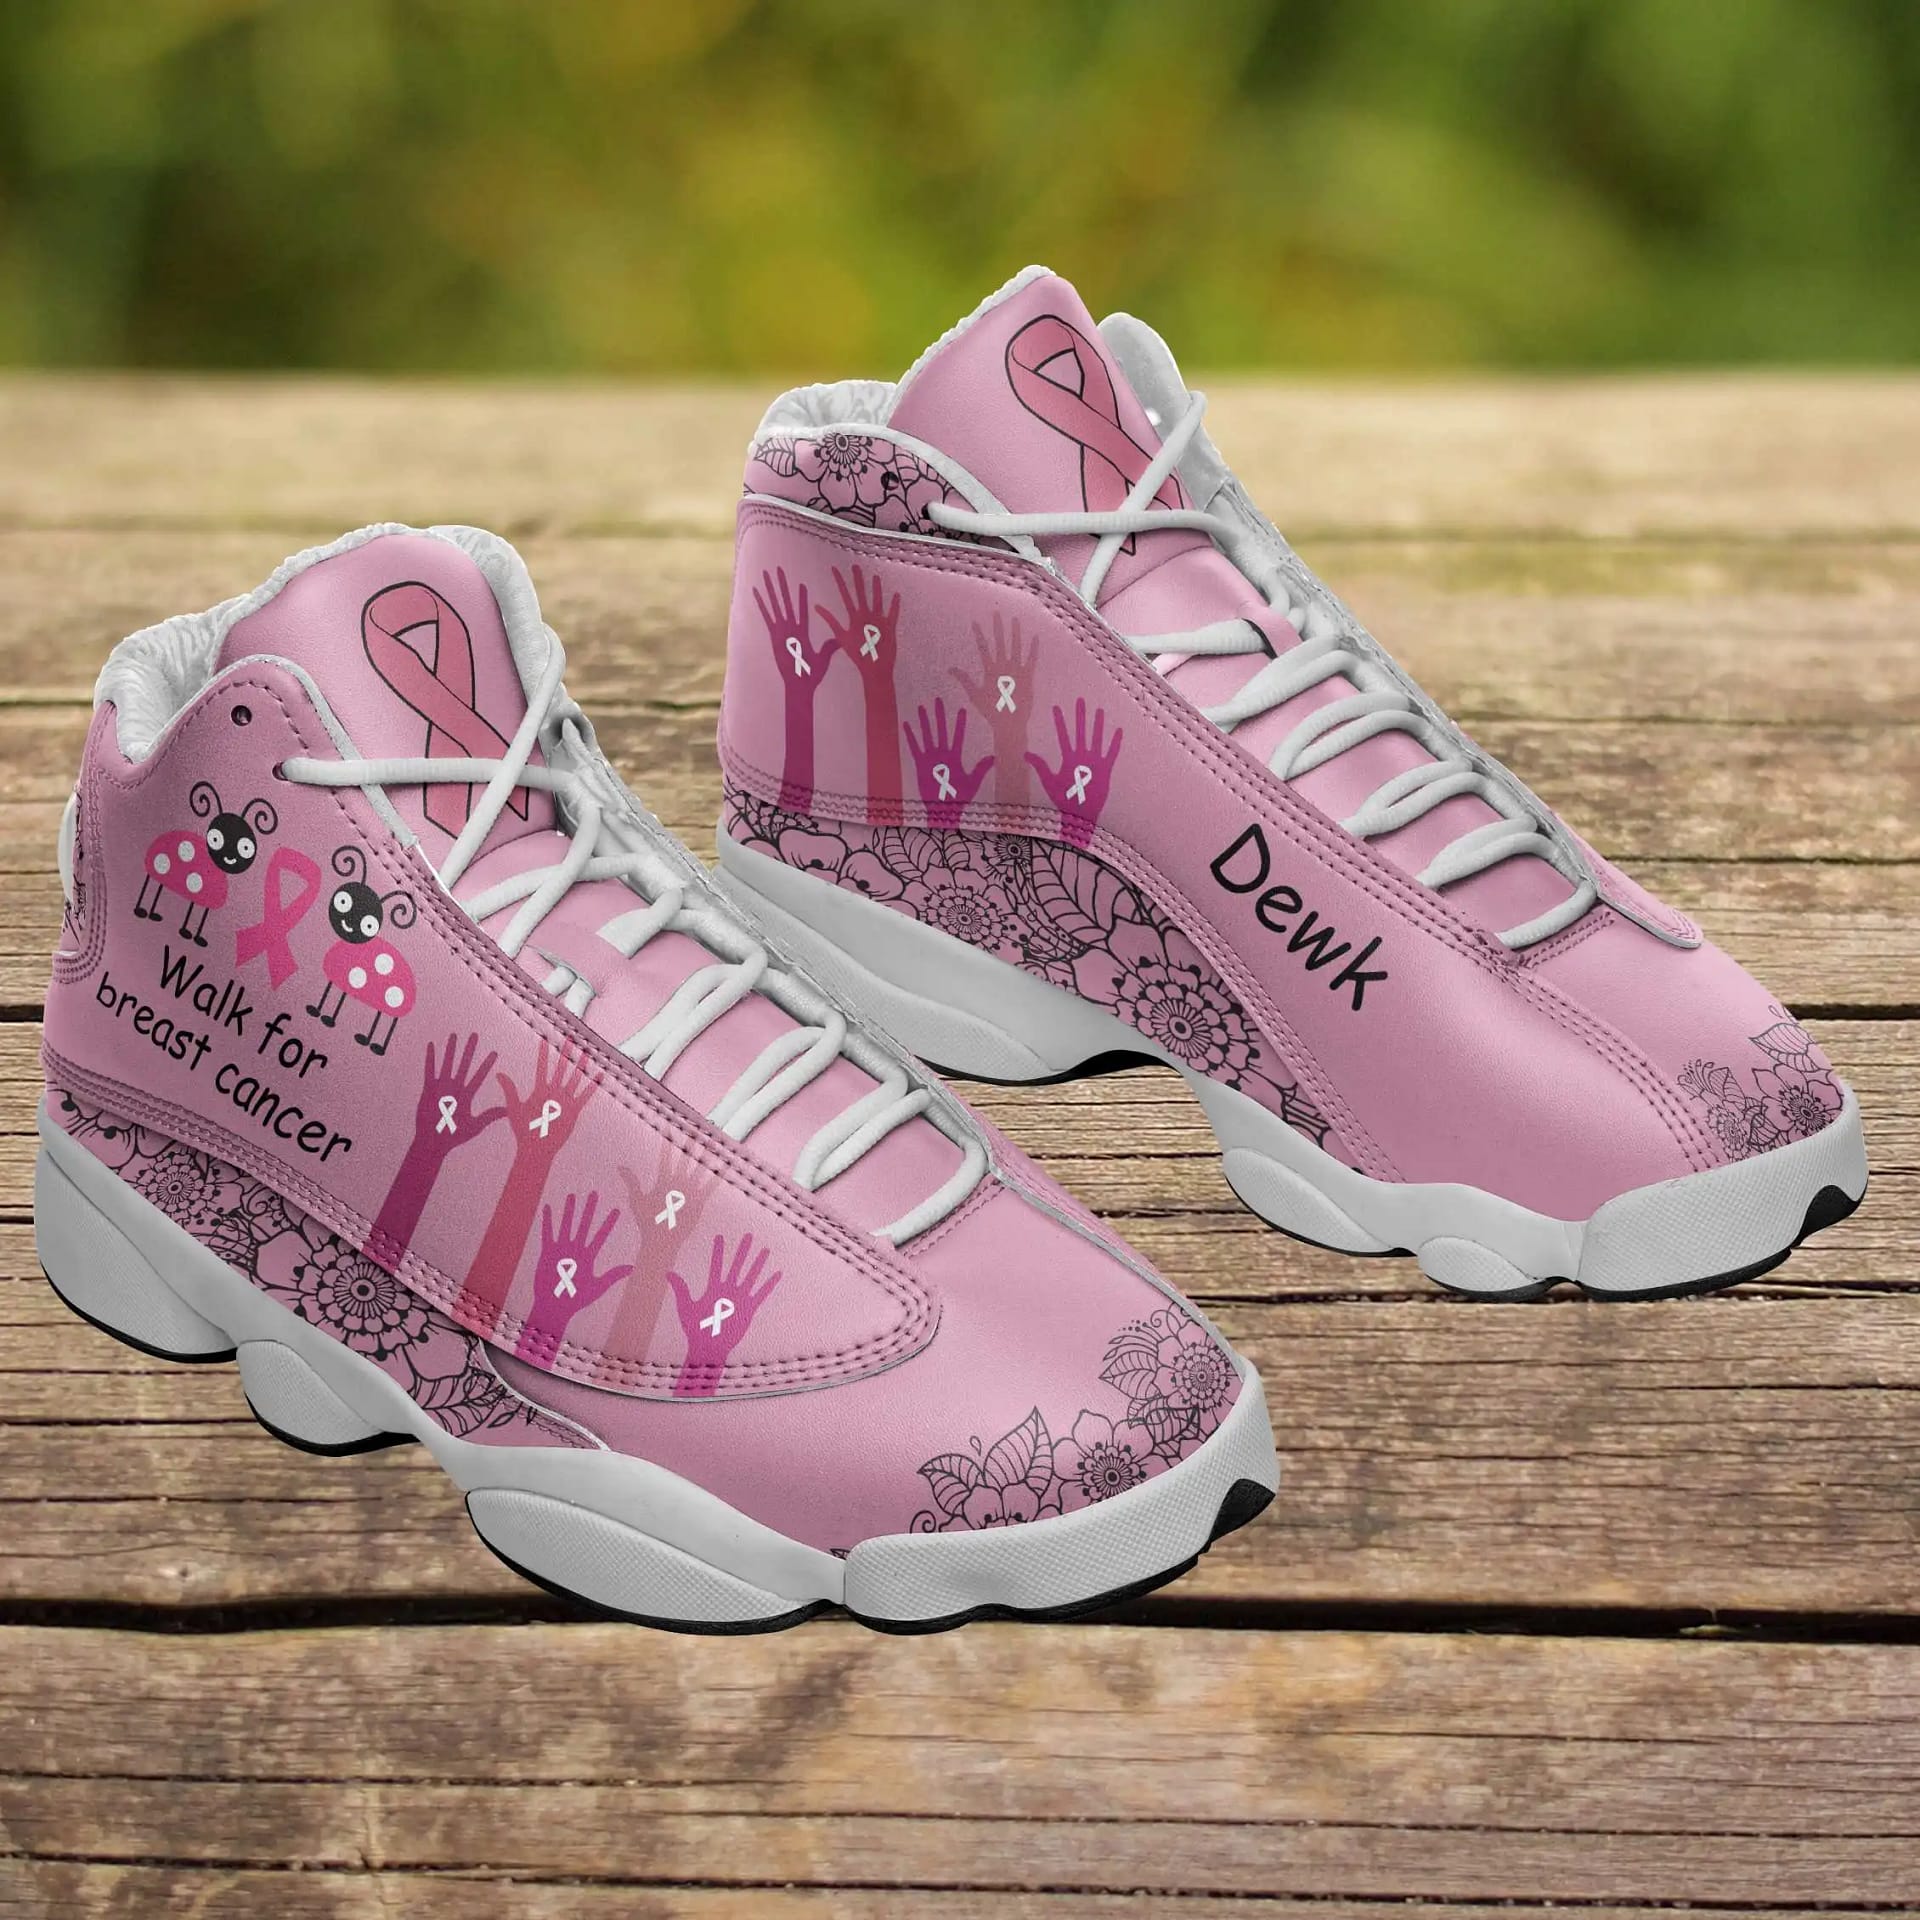 Breast Cancer Awareness Air Jordan Shoes